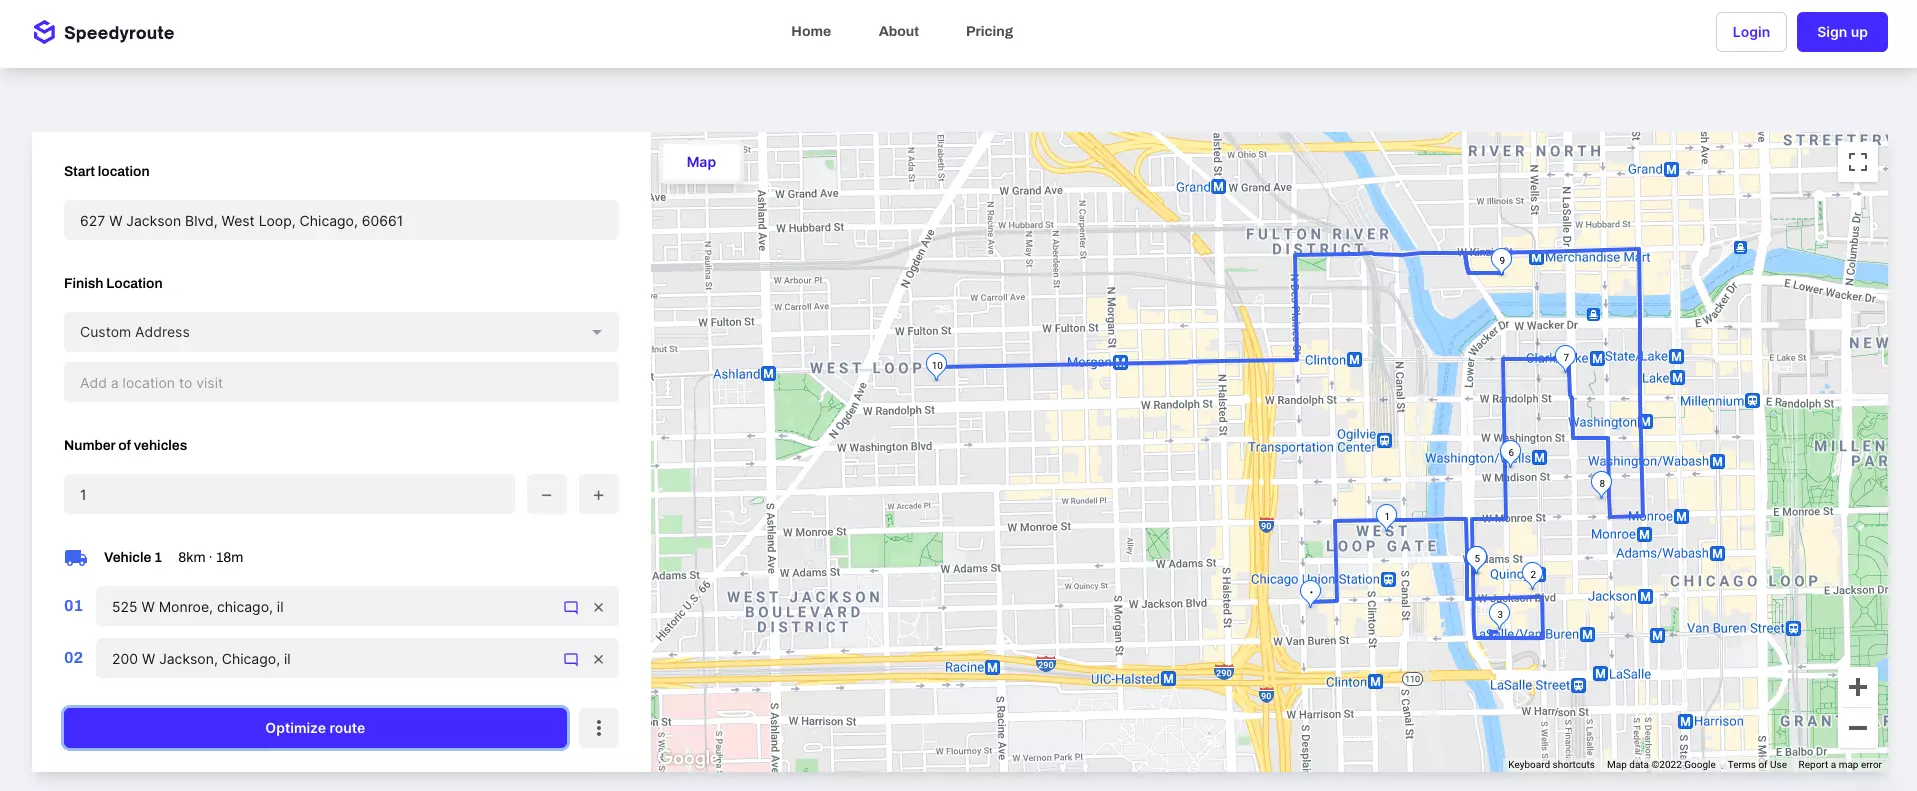 Captura de pantalla de Speedyroute mostrando una ruta alrededor de Chicago.